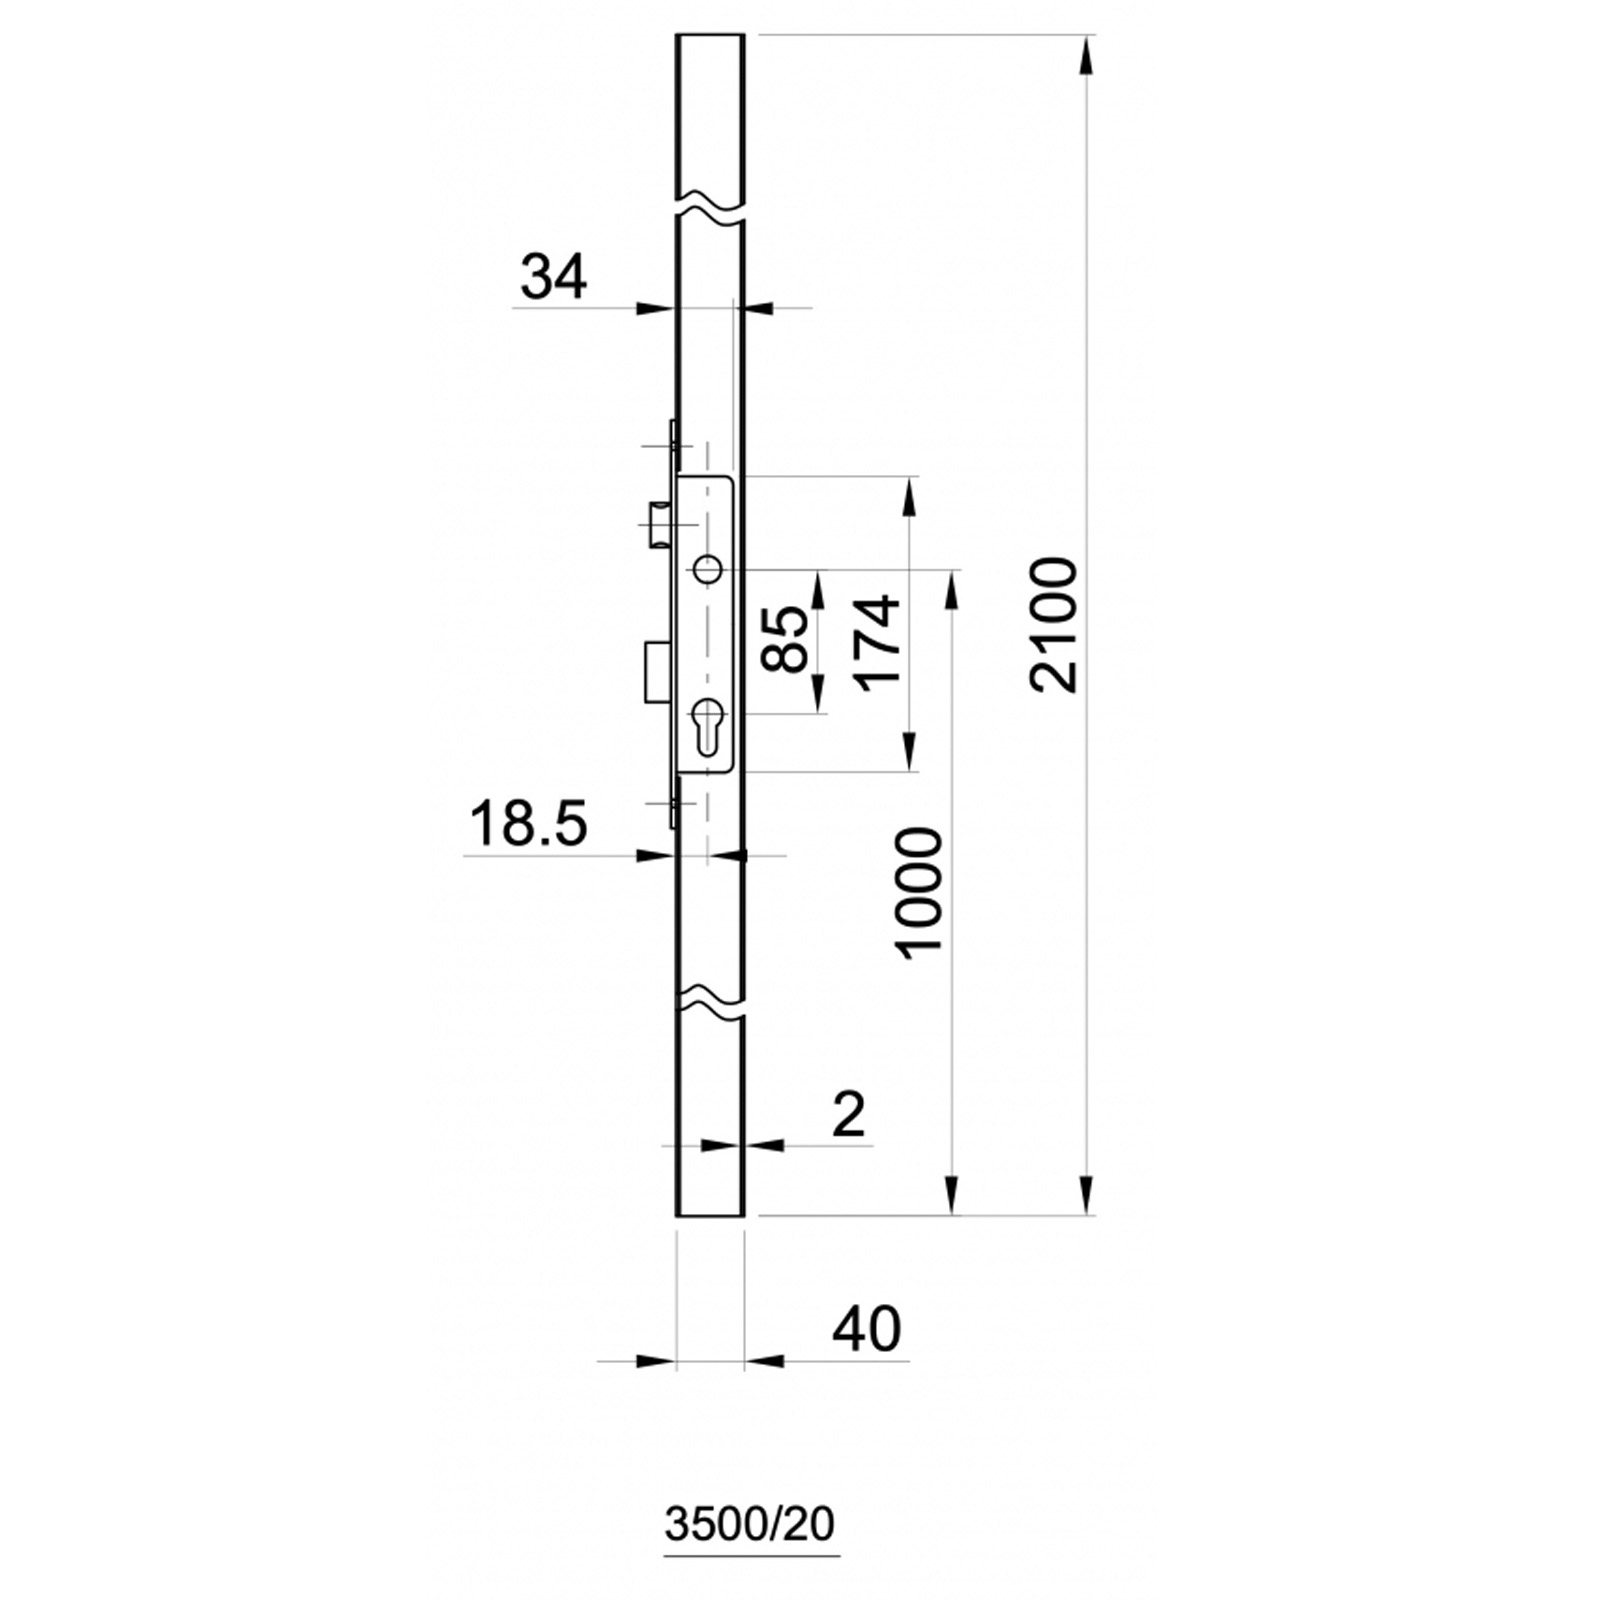 Rahmenprofil mit Aussparung für Einsteckschloss IB 3500/20